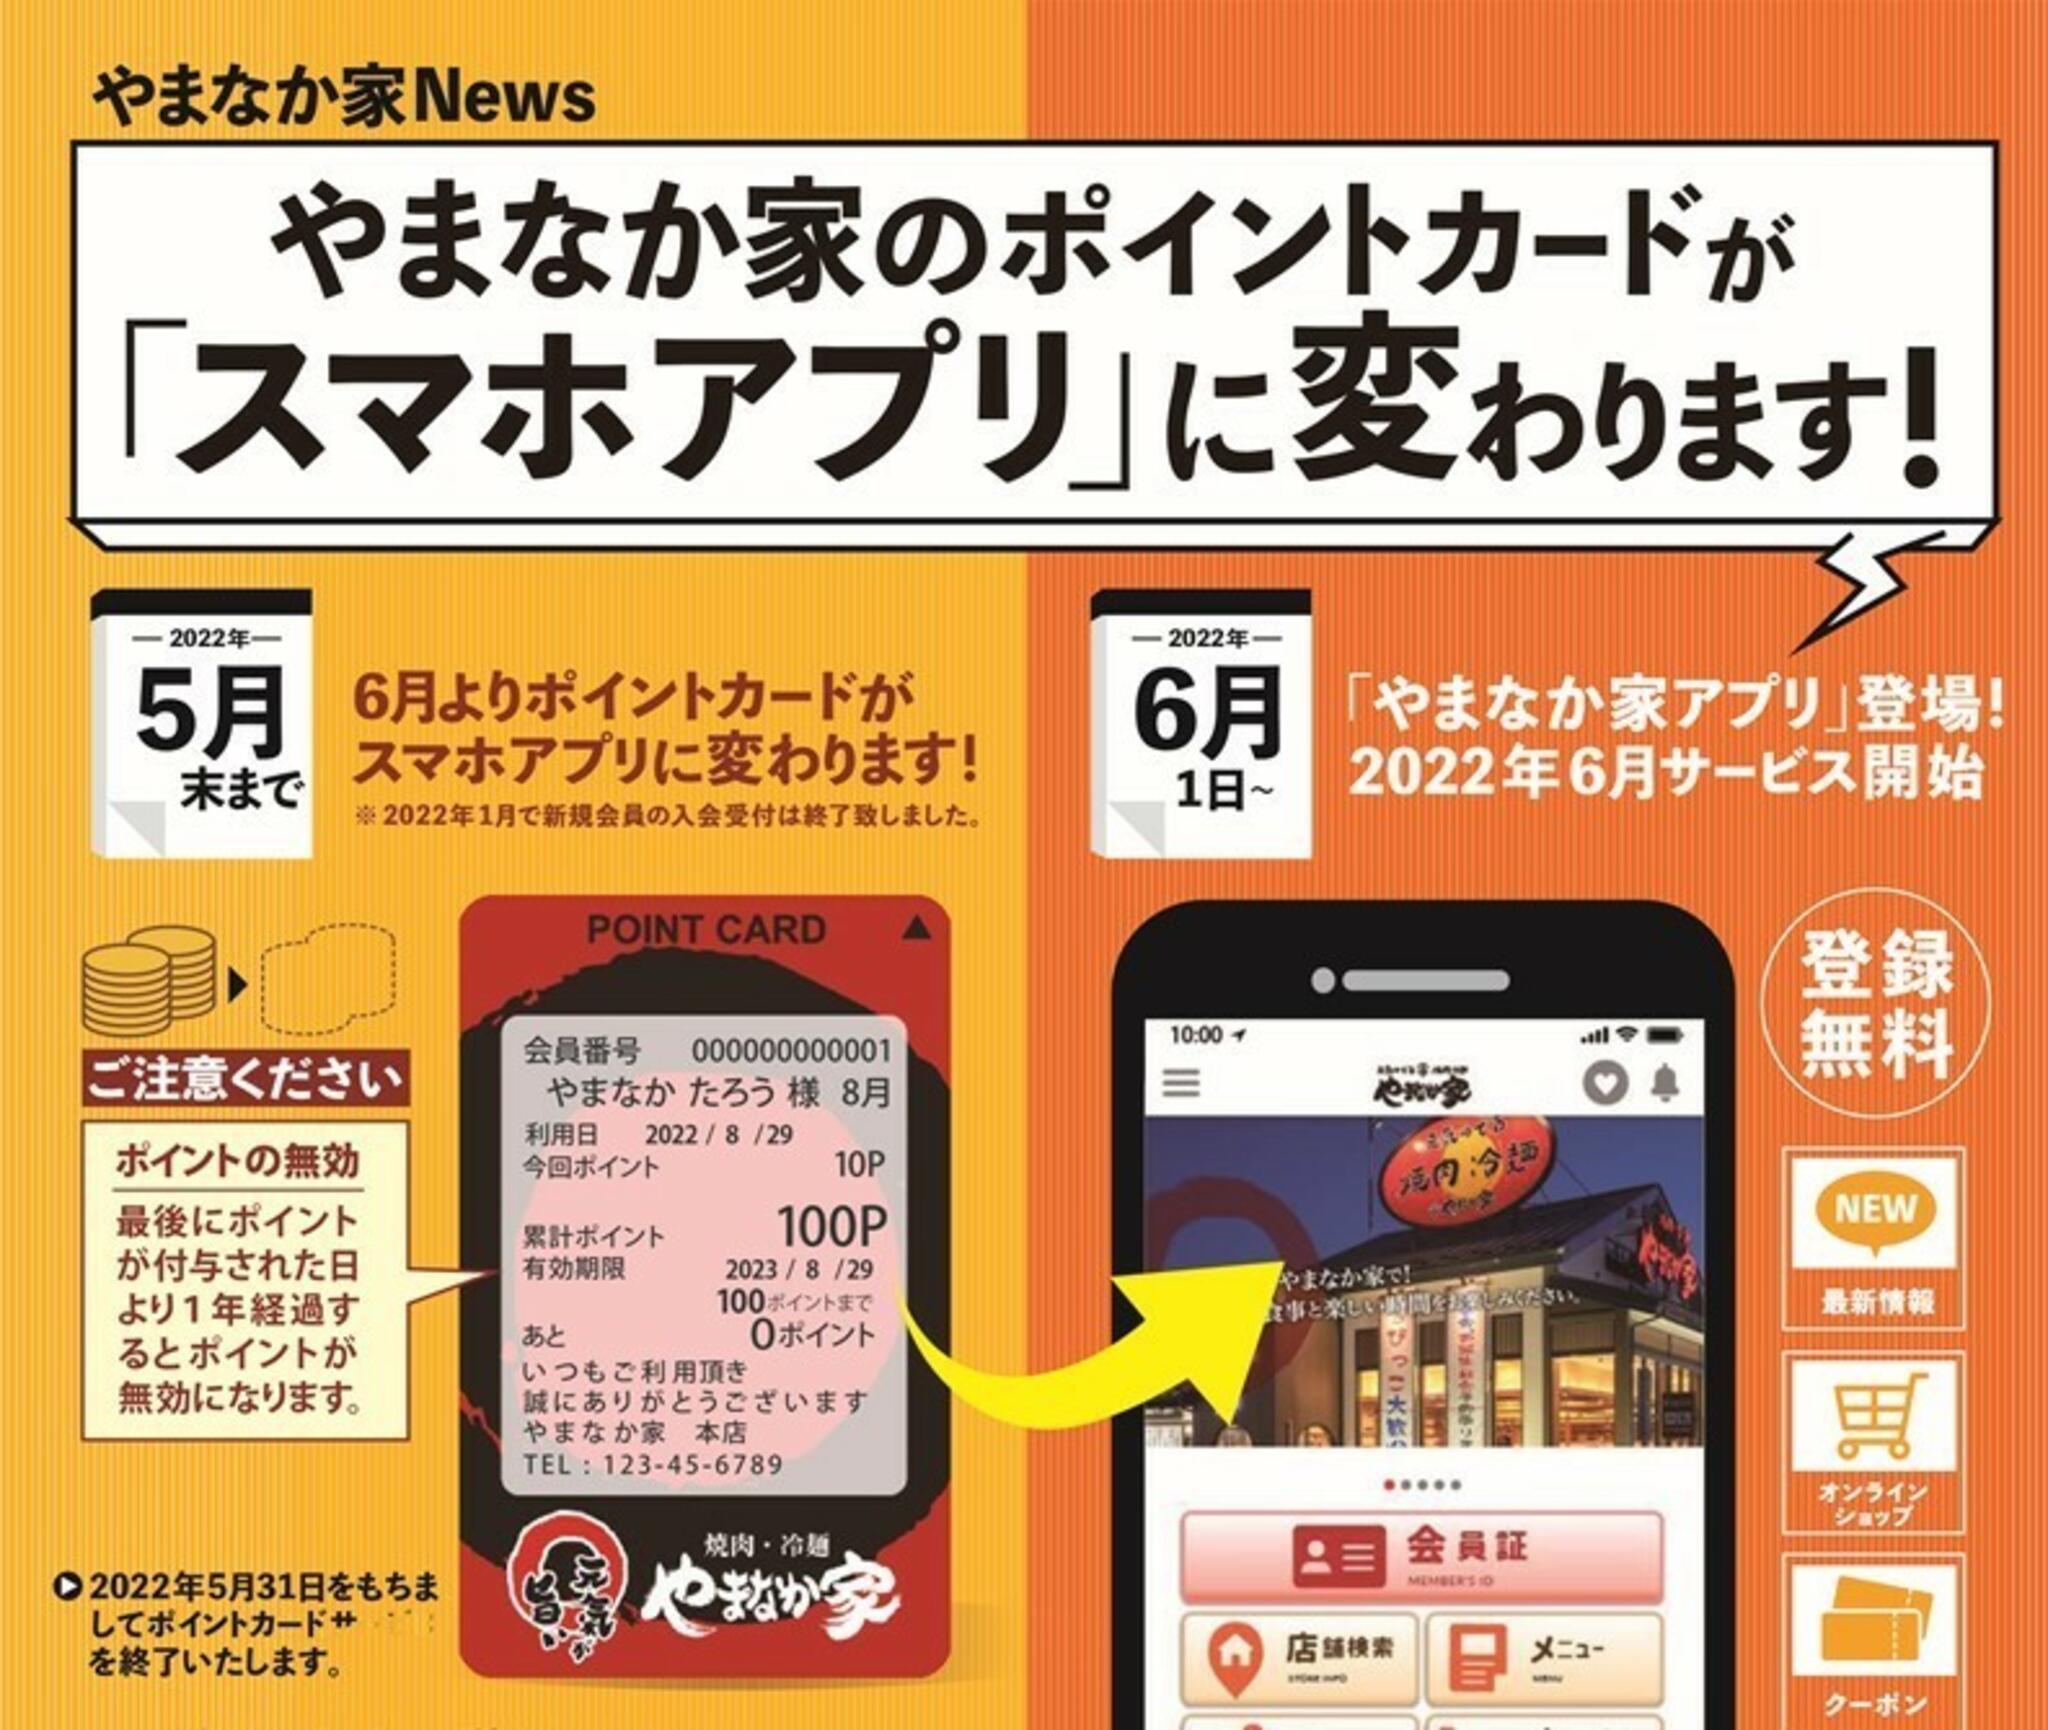 焼肉冷麺やまなか家 北上店からのお知らせ(【やまなか家のポイントカードがスマホアプリに変わります！】)に関する写真